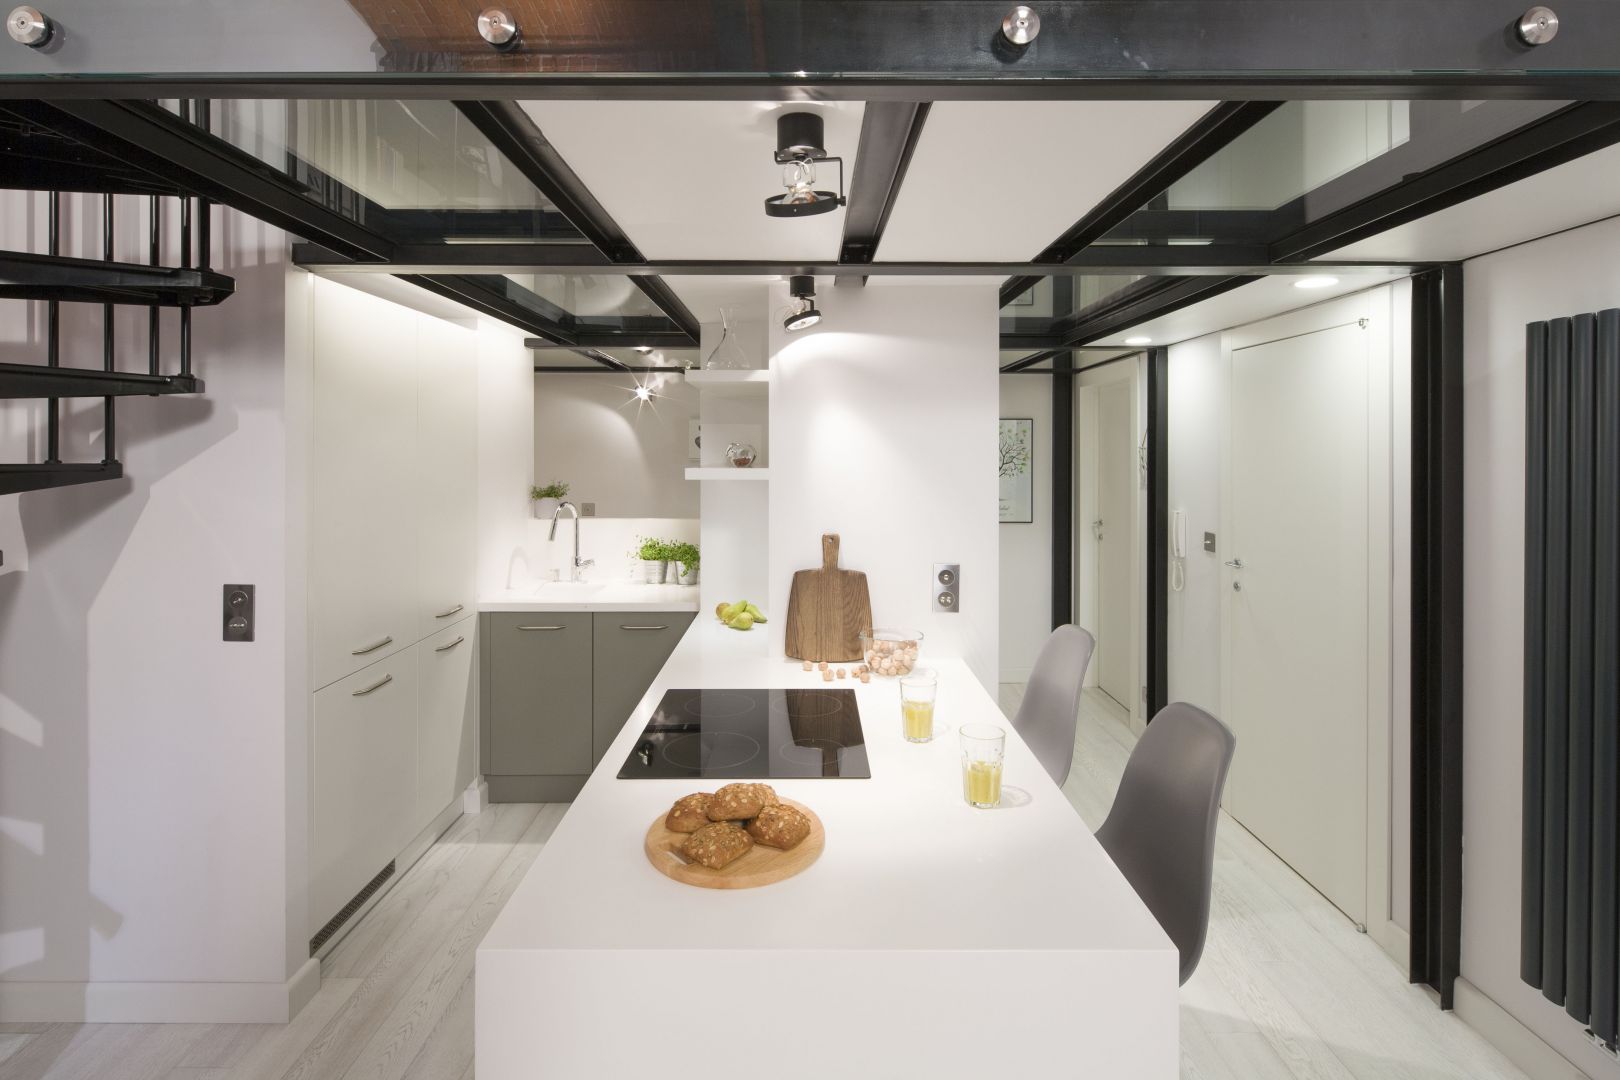 Wnętrze zainspirowane stylistyką loft. Białe szafki kuchenne sprawiają, że wnętrze nabrało wizualnej lekkości. Projekt: Szymon Chudy. Fot. Bartosz Jarosz 